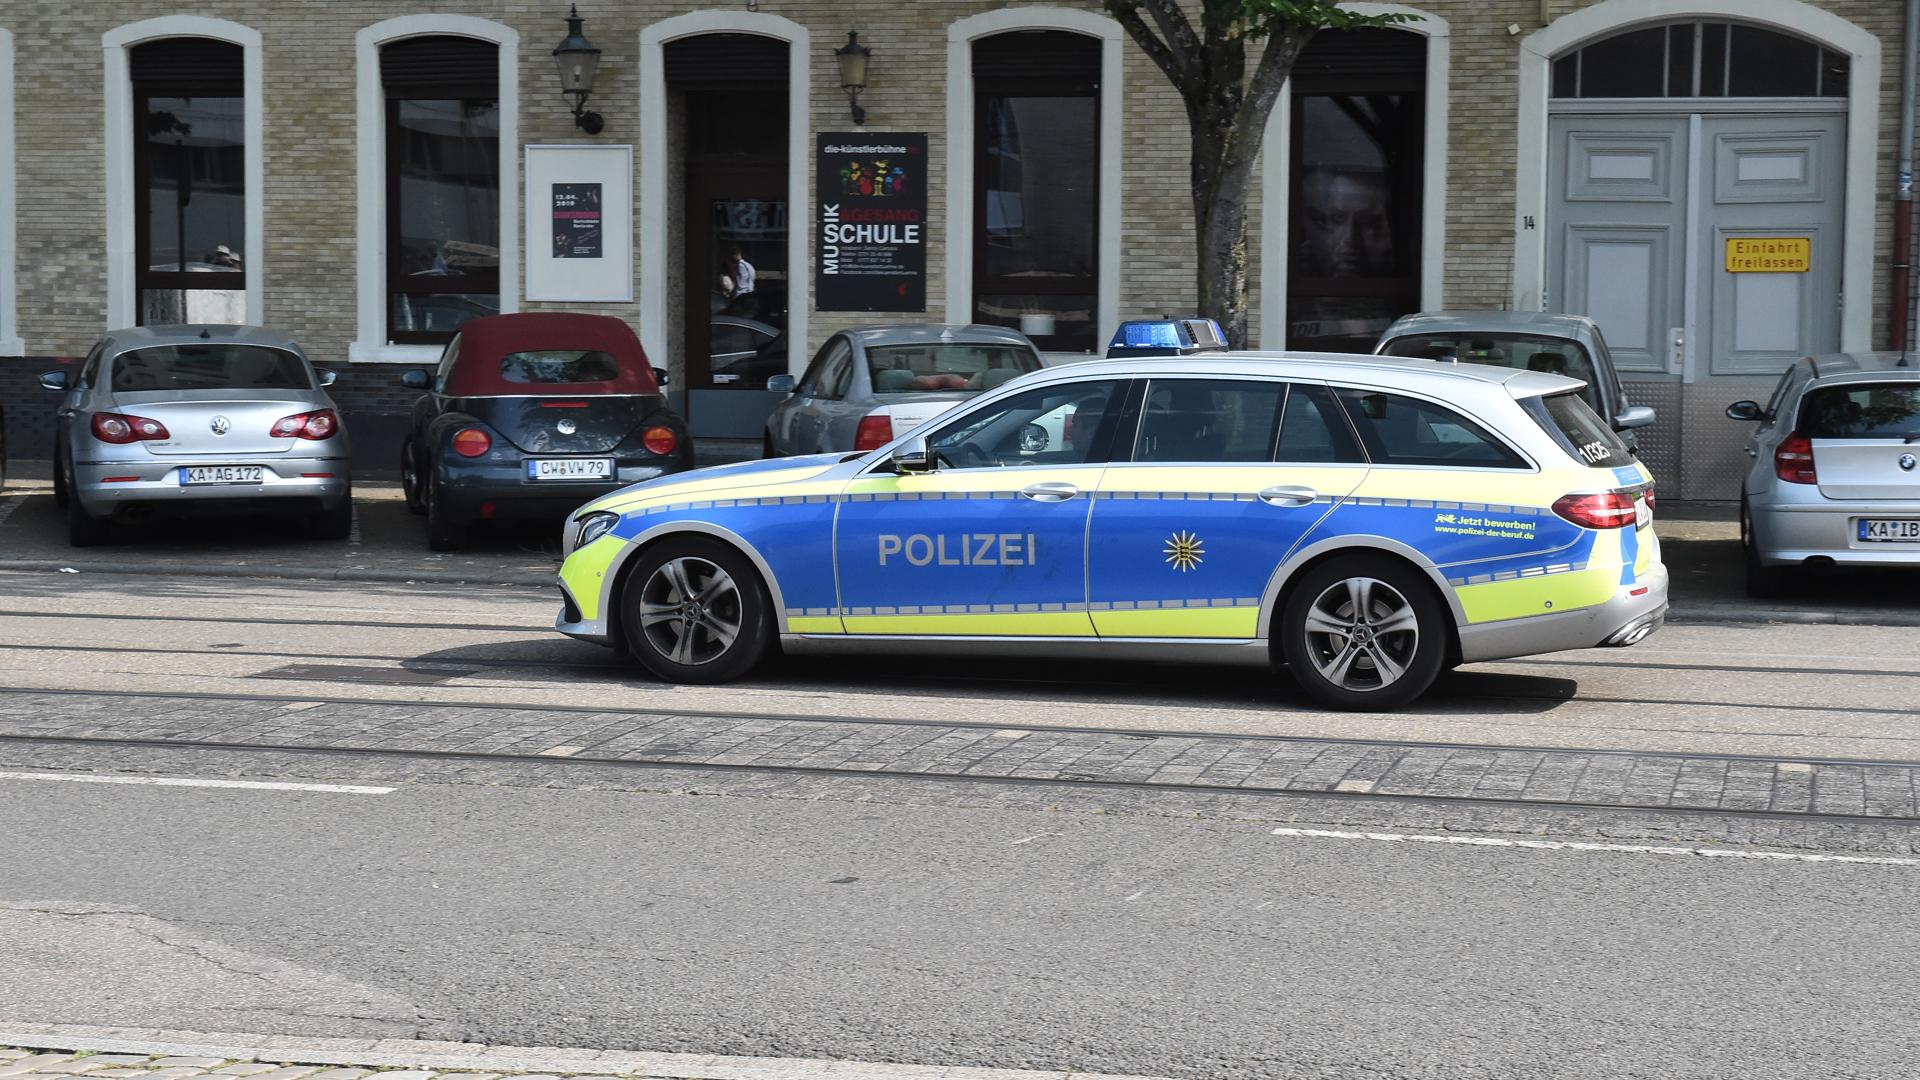 Ein Polizeiauto fährt auf der Straße. (Symbolbild)